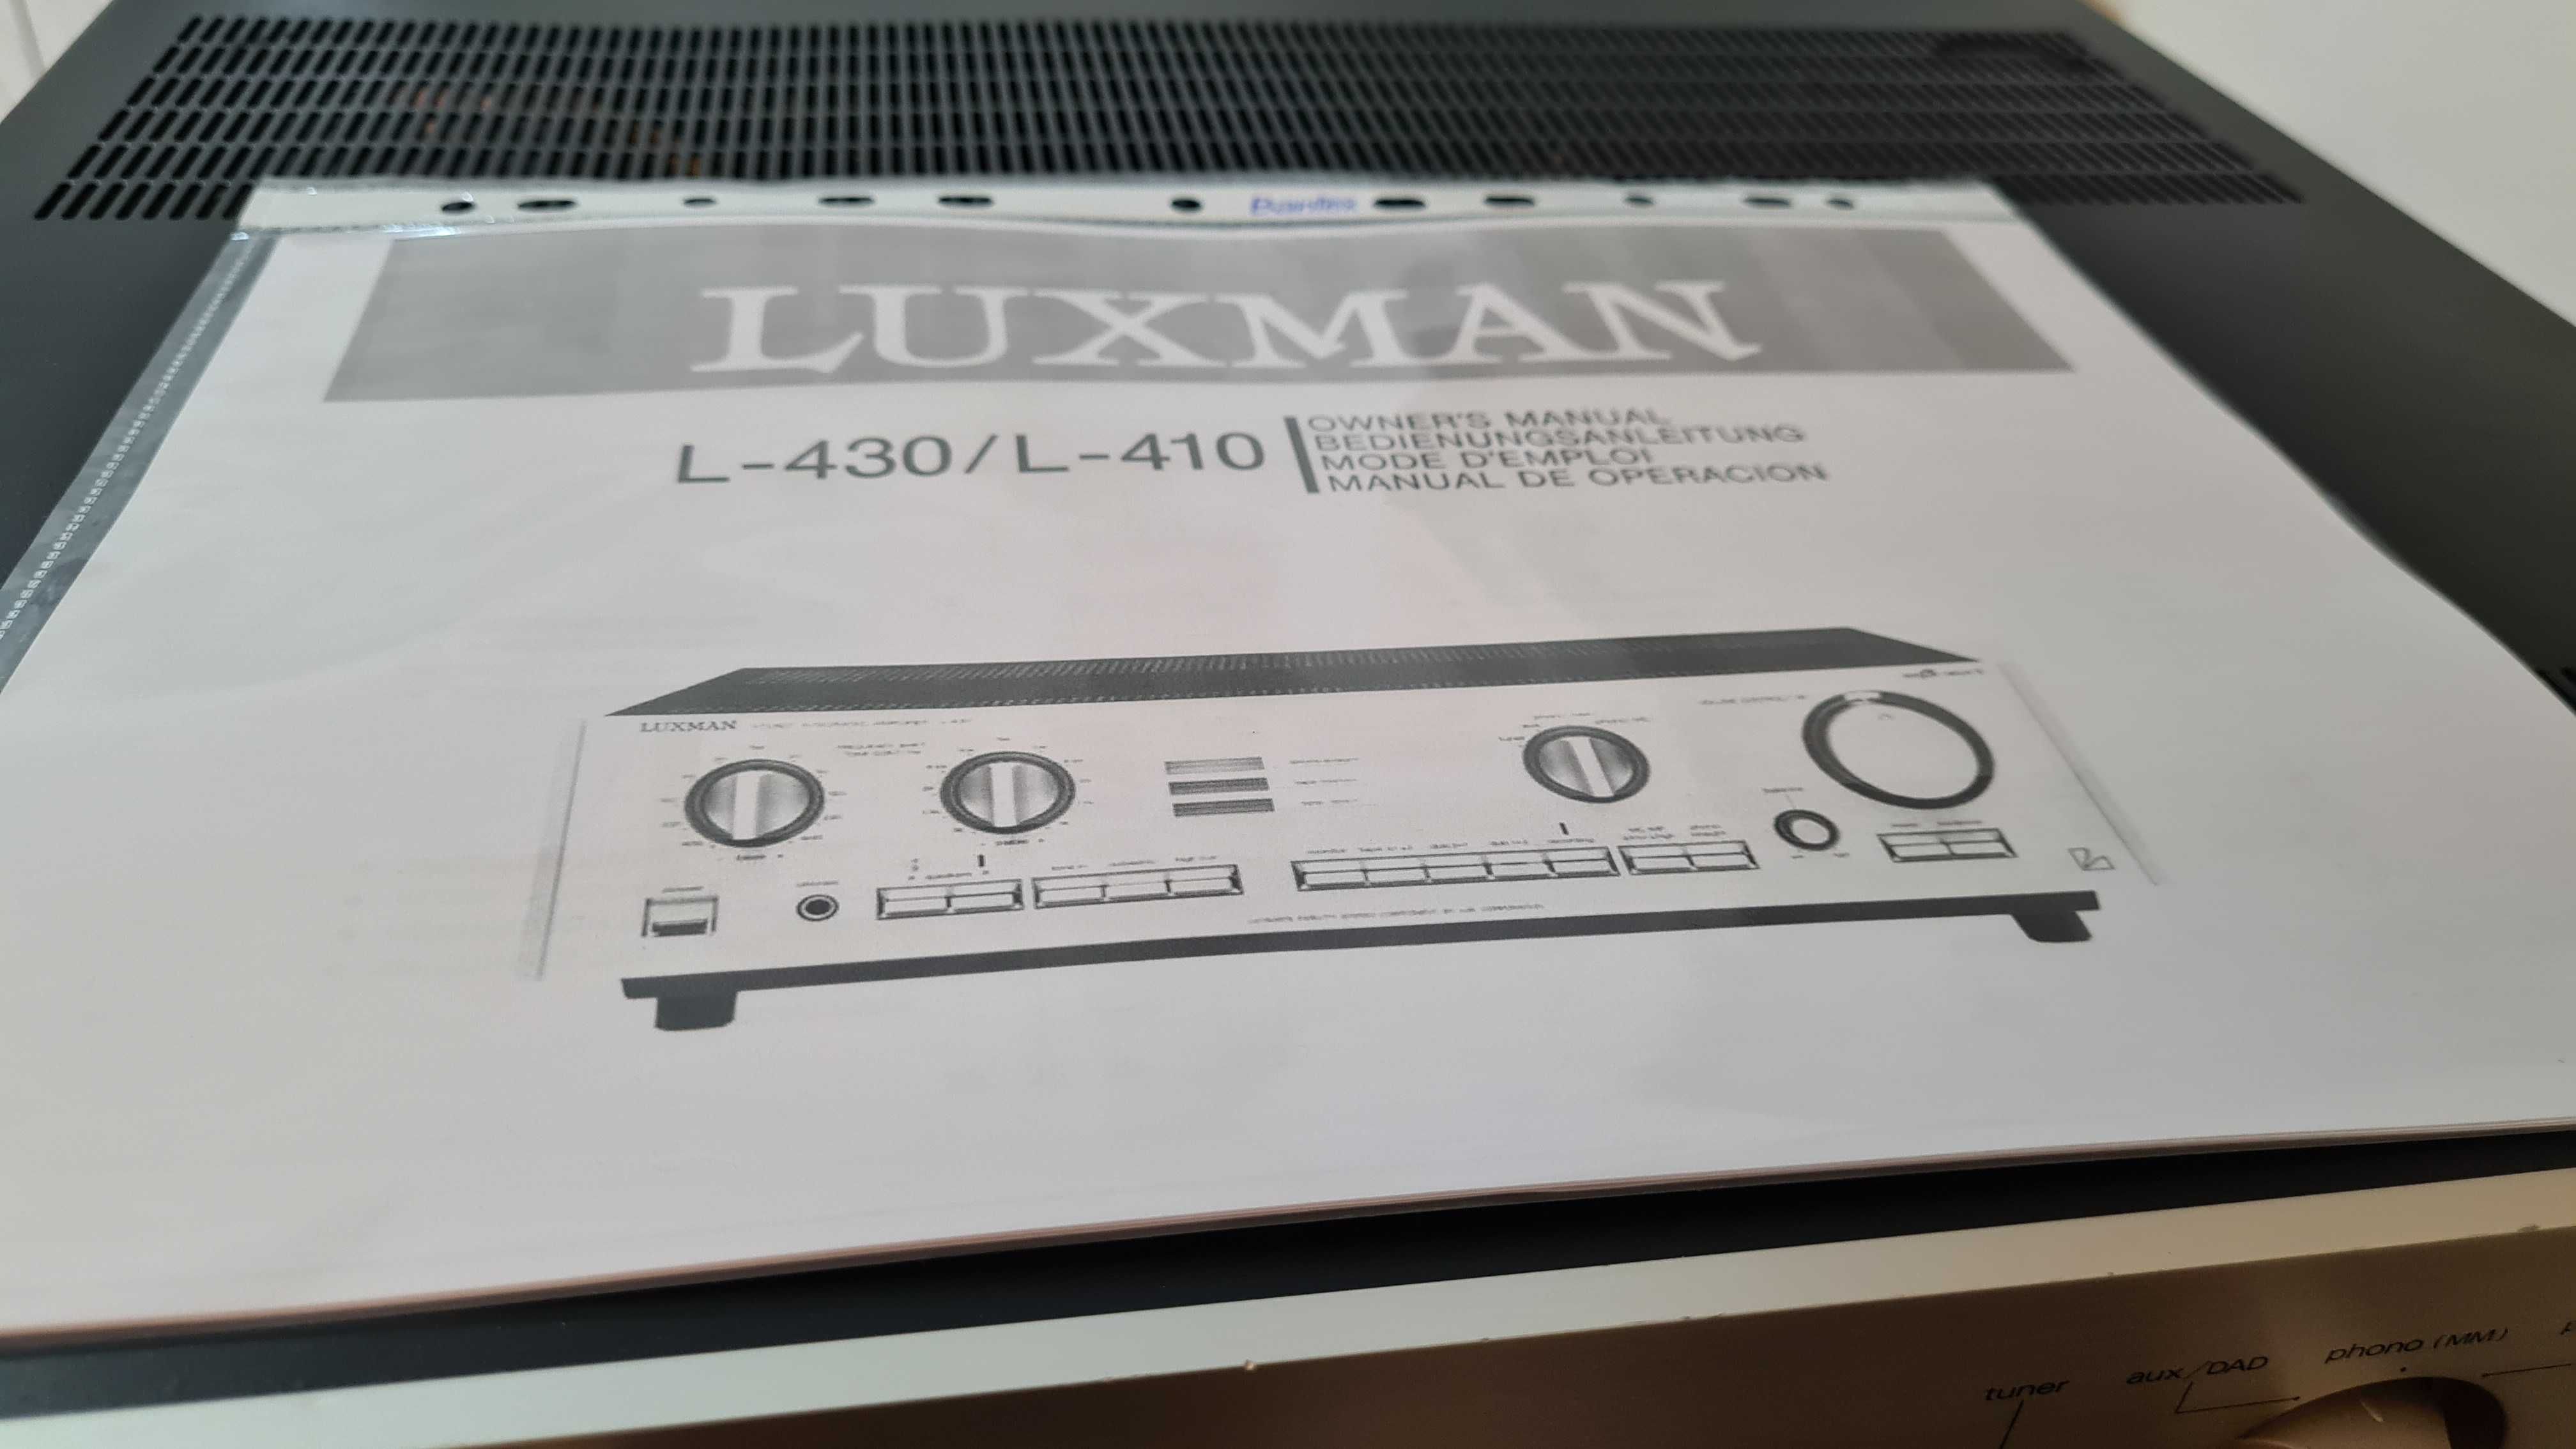 LUXMAN L-410 wzmacniacz Made in Japan- Piękne brzmienie- instrukcja